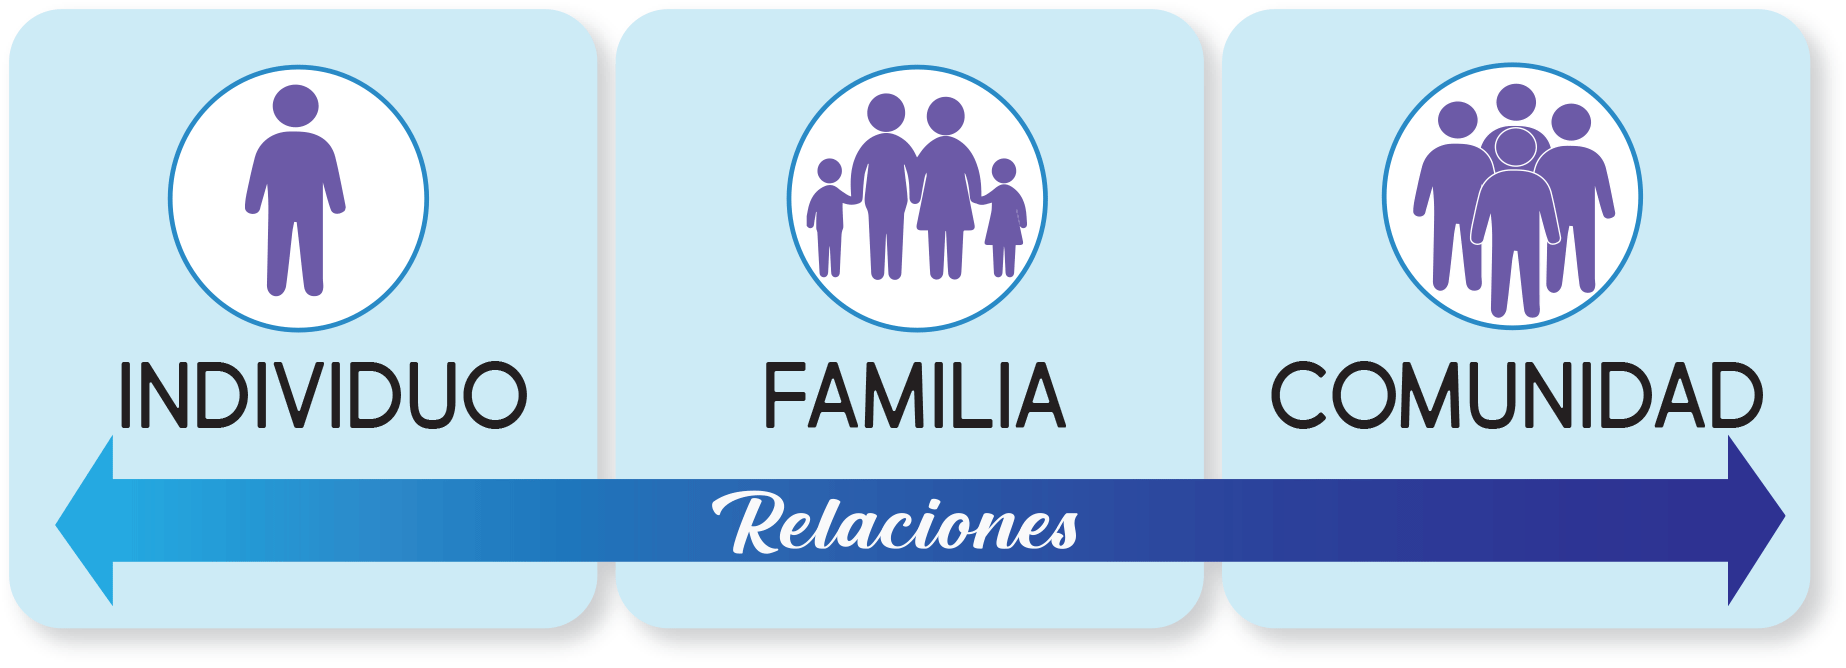 Figura 3: Recuadros que representan las relaciones que fortalecen la resiliencia: Individuo, Familia y Comunidad